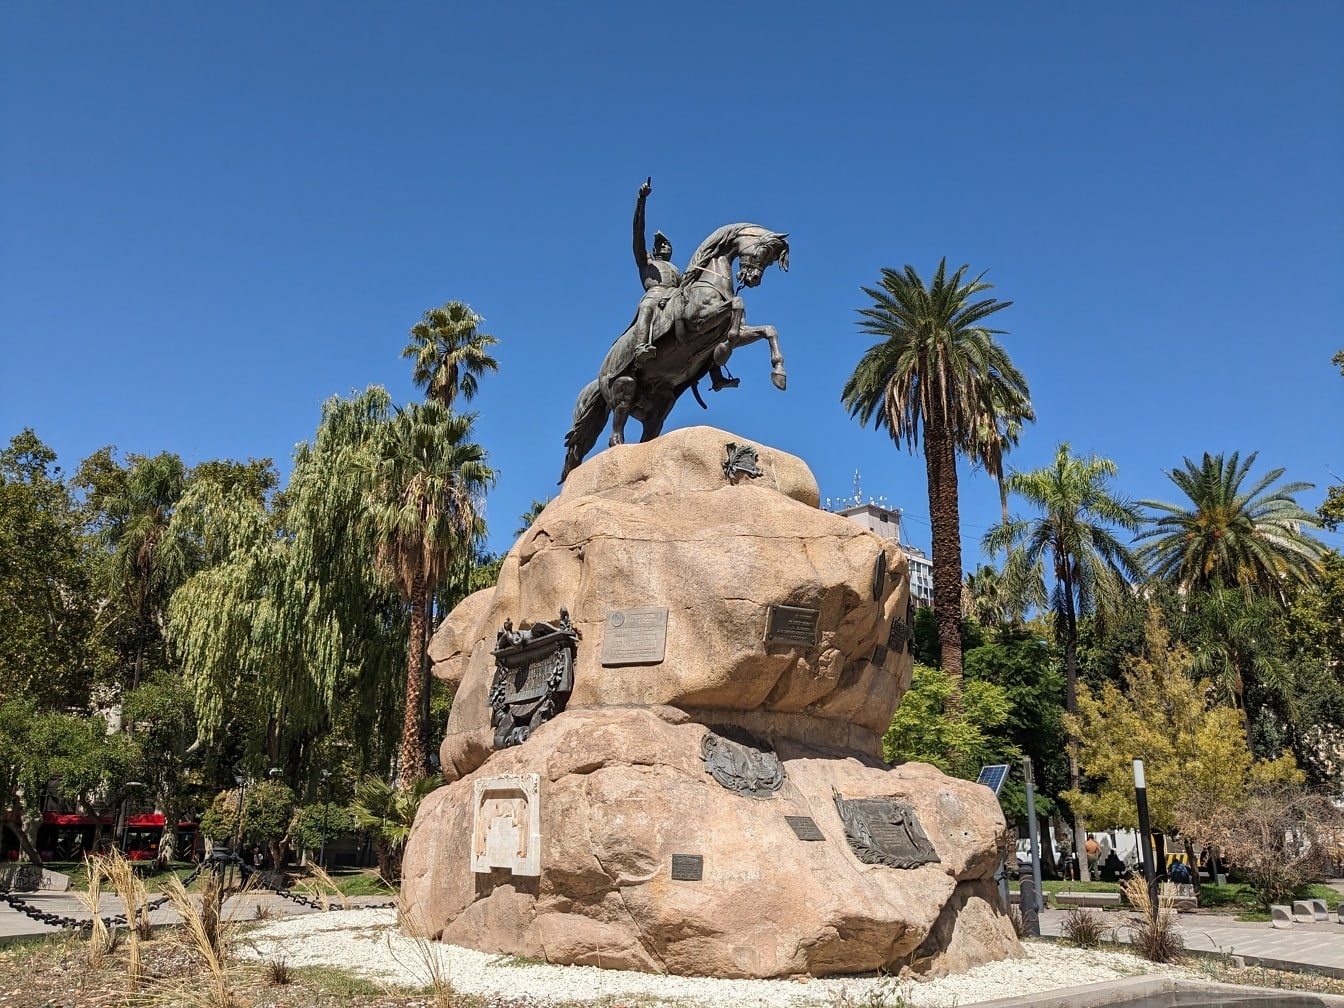 Άγαλμα του στρατηγού Χοσέ ντε Σαν Μαρτίν καβάλα σε άλογο πάνω σε μεγάλο βράχο στην Plaza San Martin στην πόλη Μεντόζα της Αργεντινής